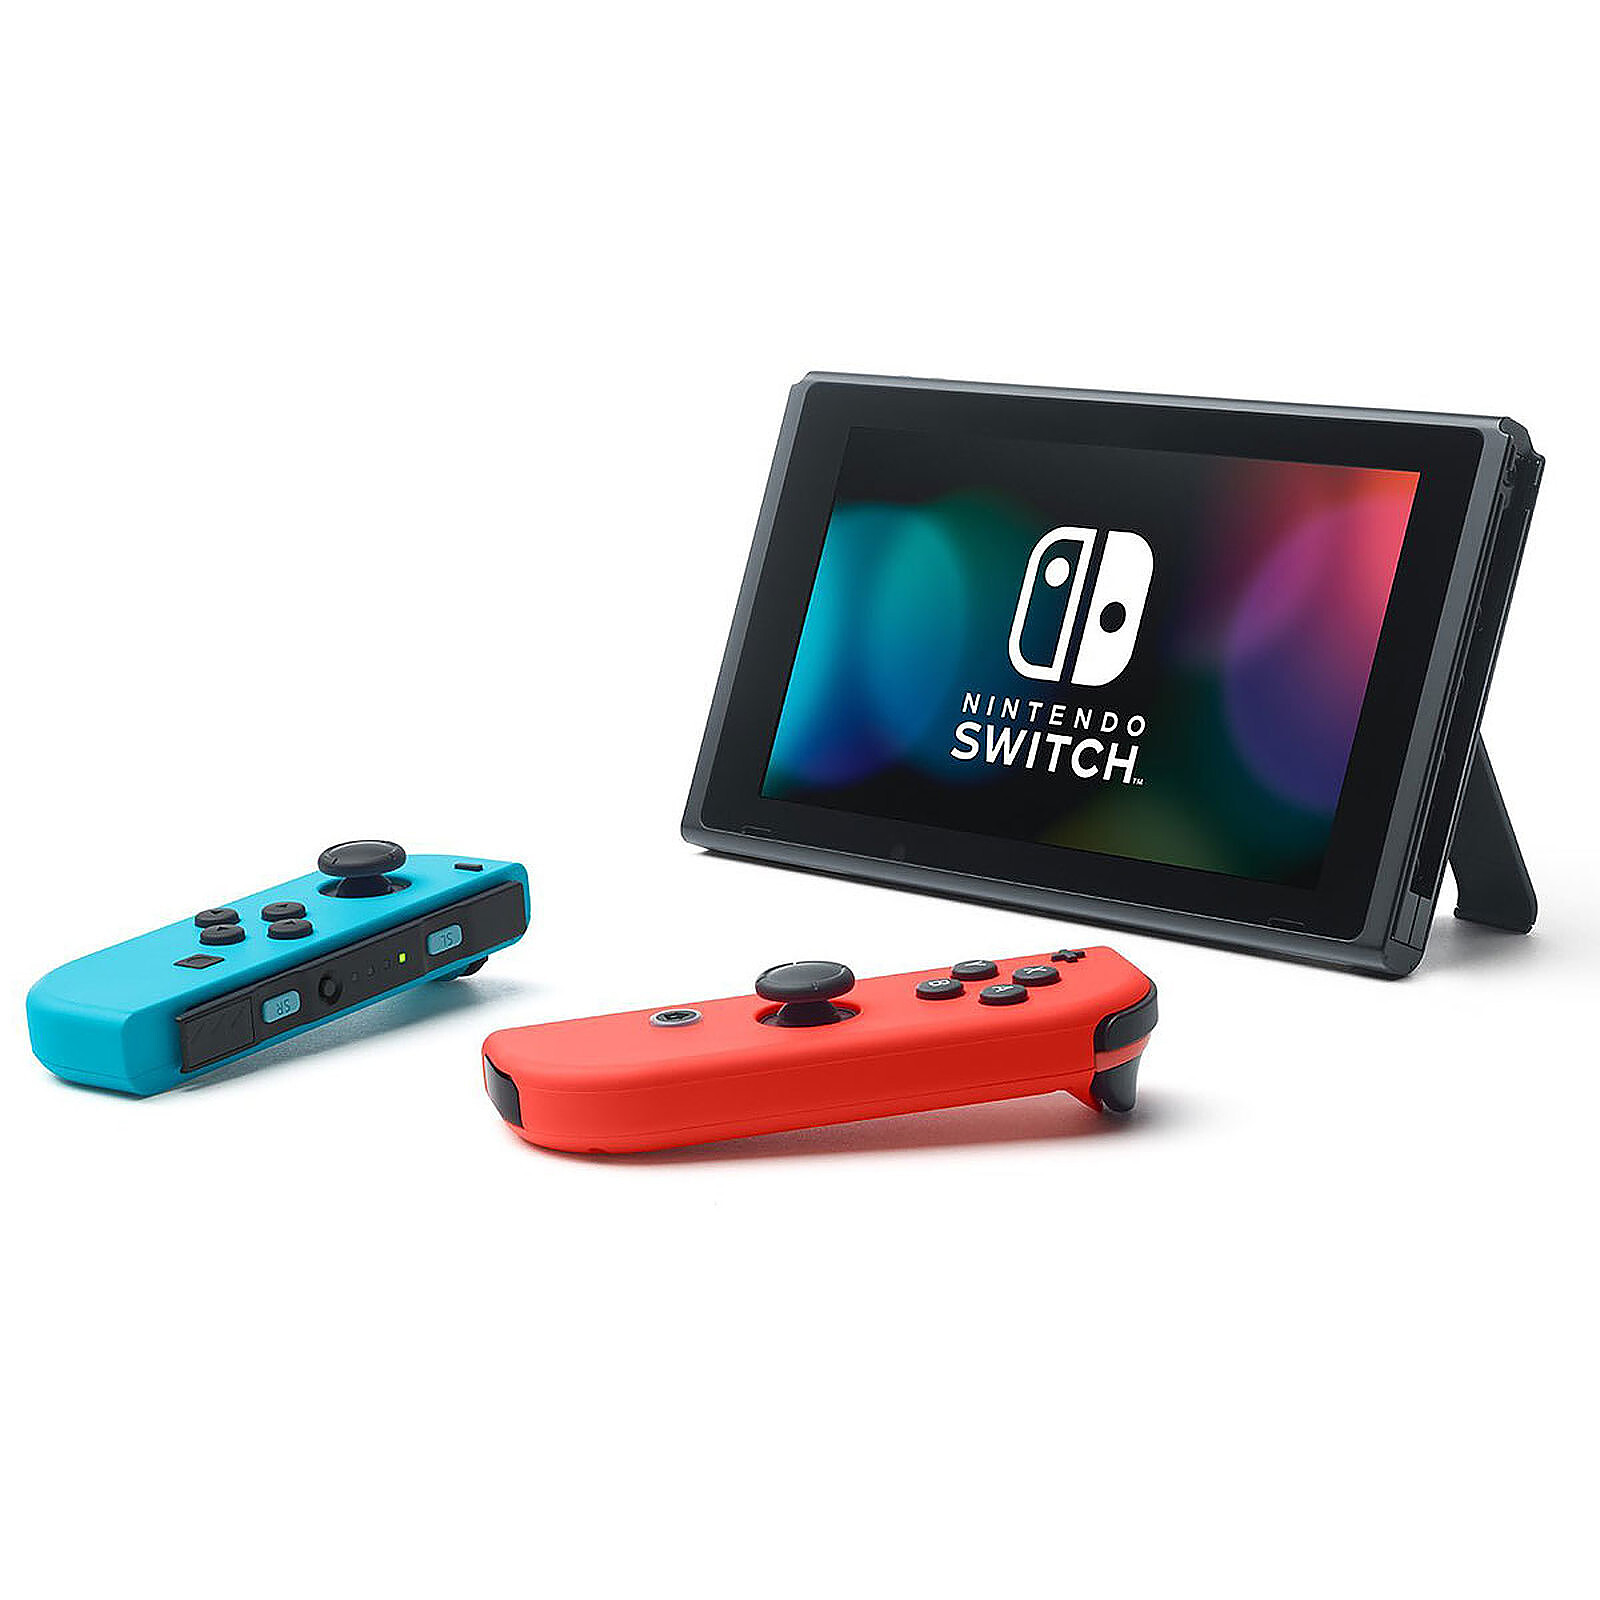 Nintendo Switch : Consoles, Jeux, Packs et Accessoires Switch